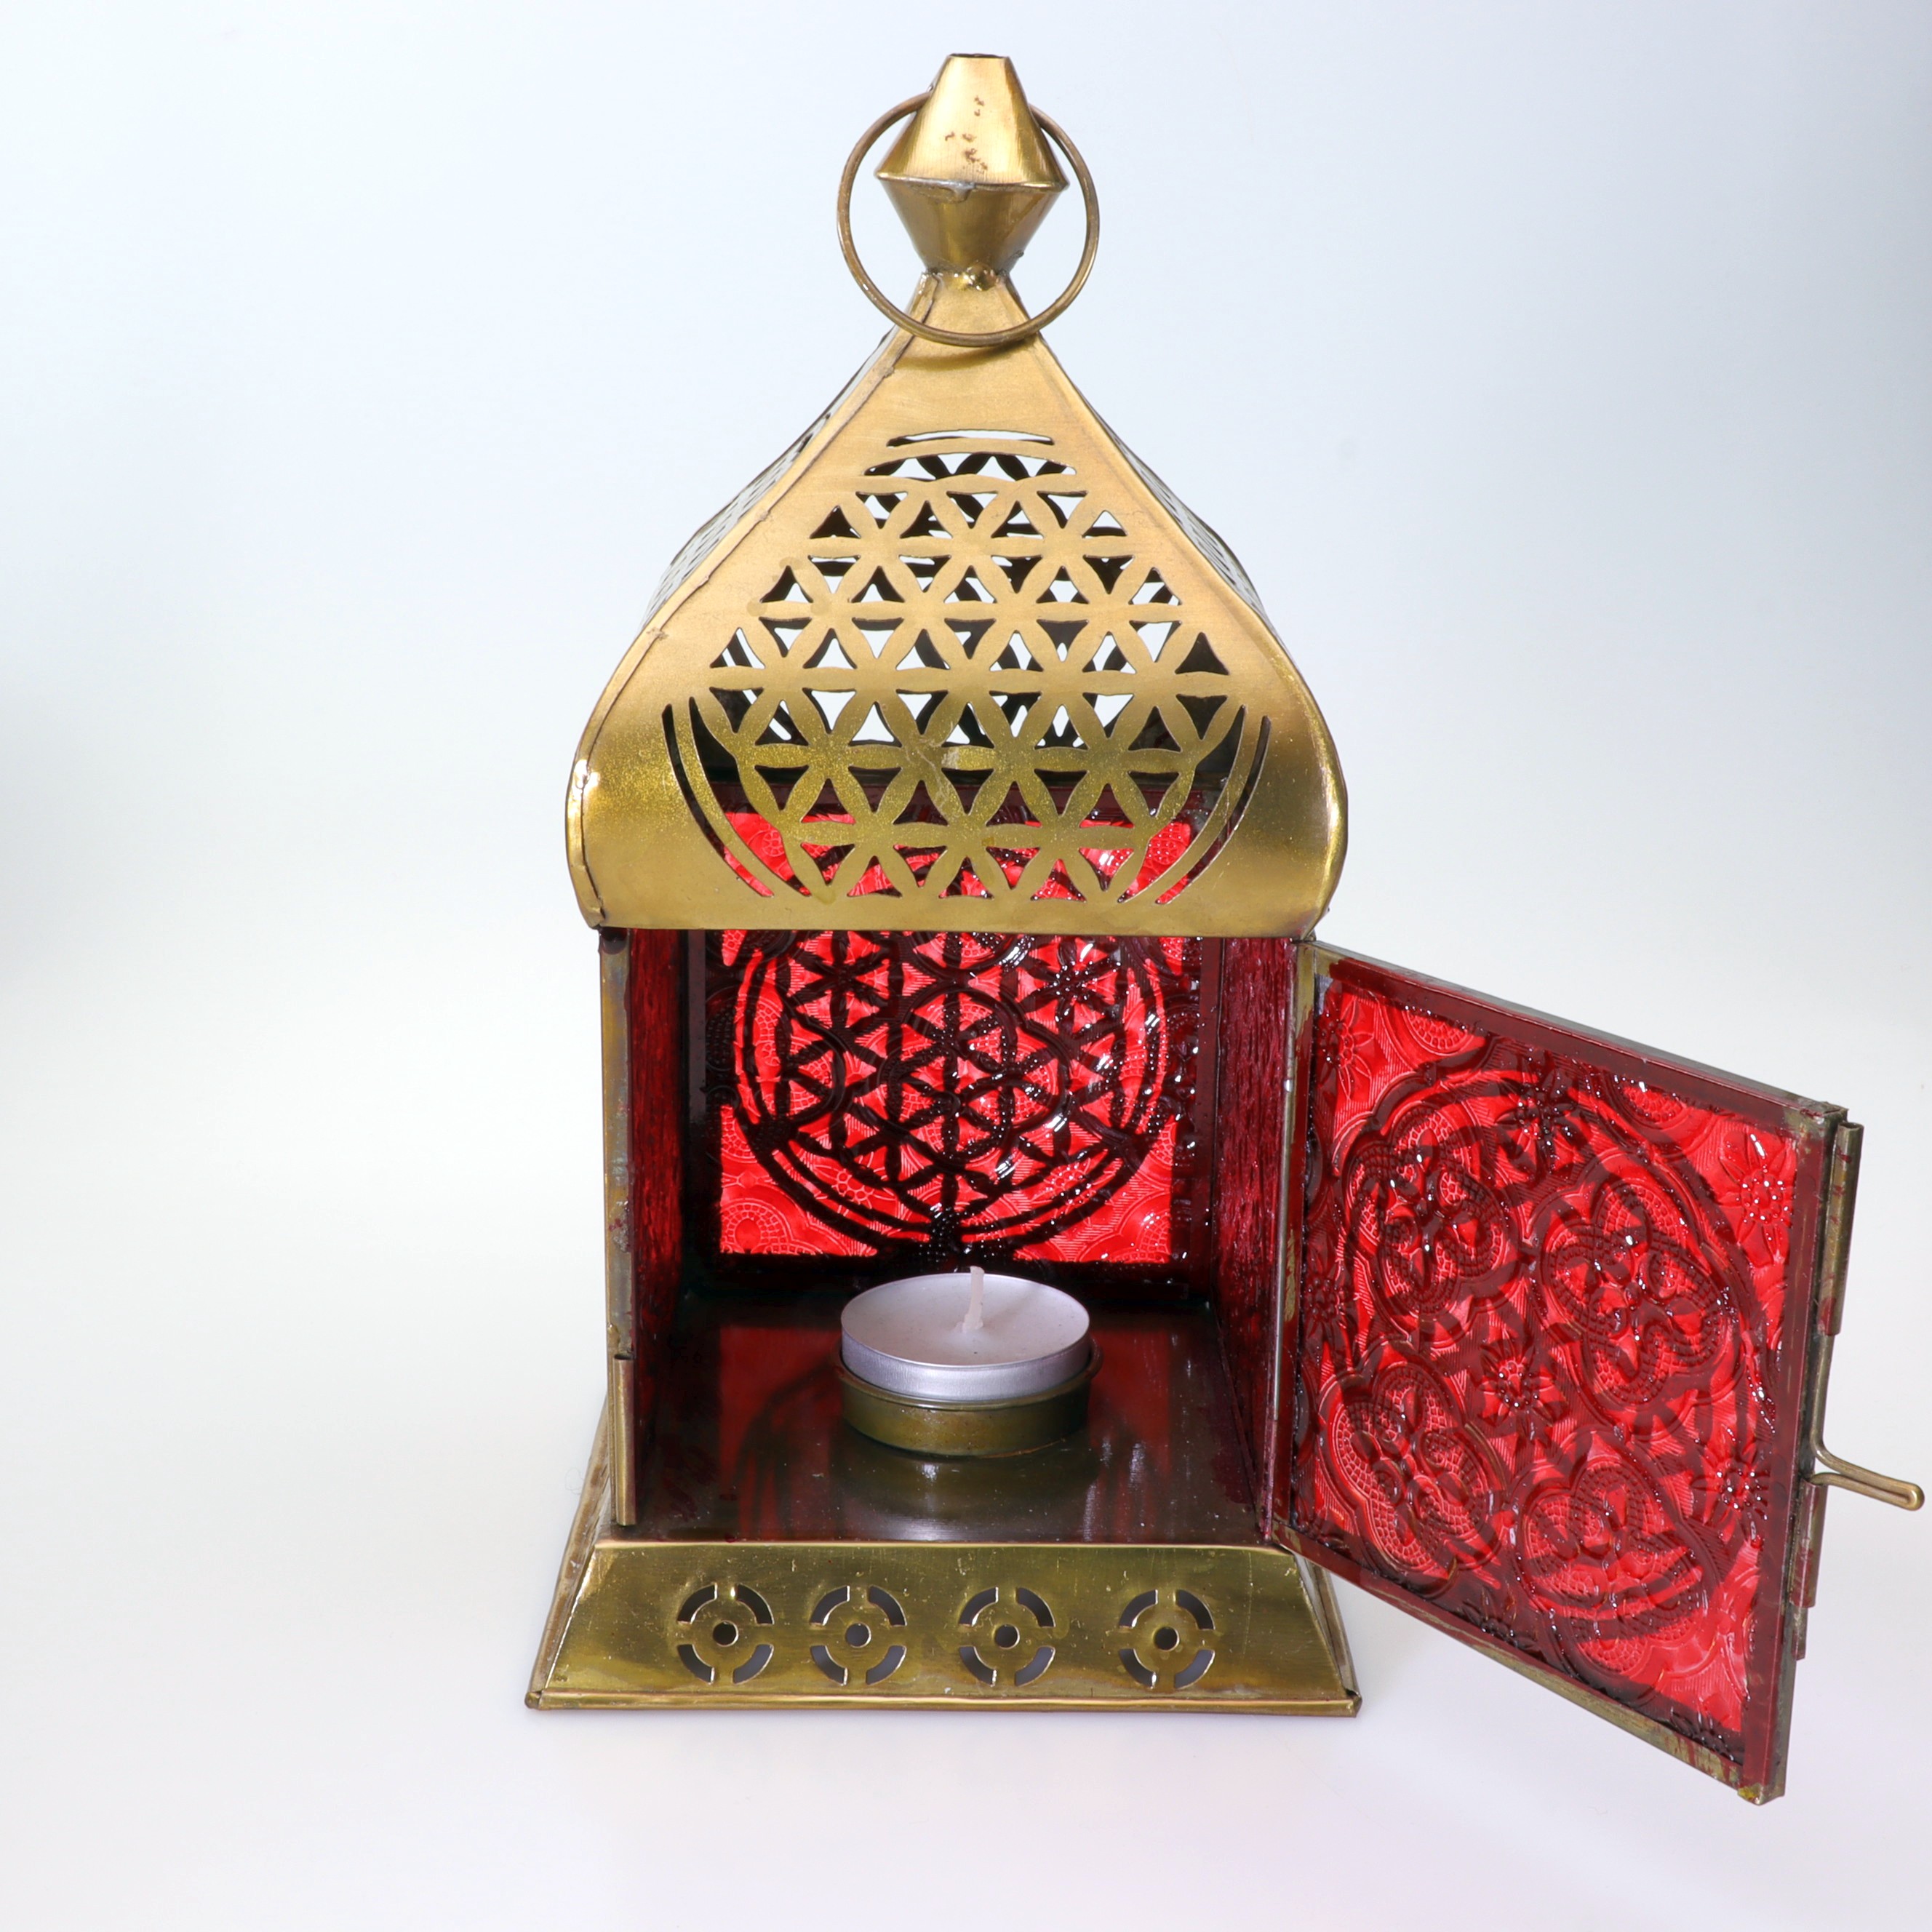 Laterne aus Metall - Blume des Lebens - messingfarbend mit orientalisch roten Glasfenstern - Teelichthalter zum Hängen oder Stellen - im Haus oder Outdoor